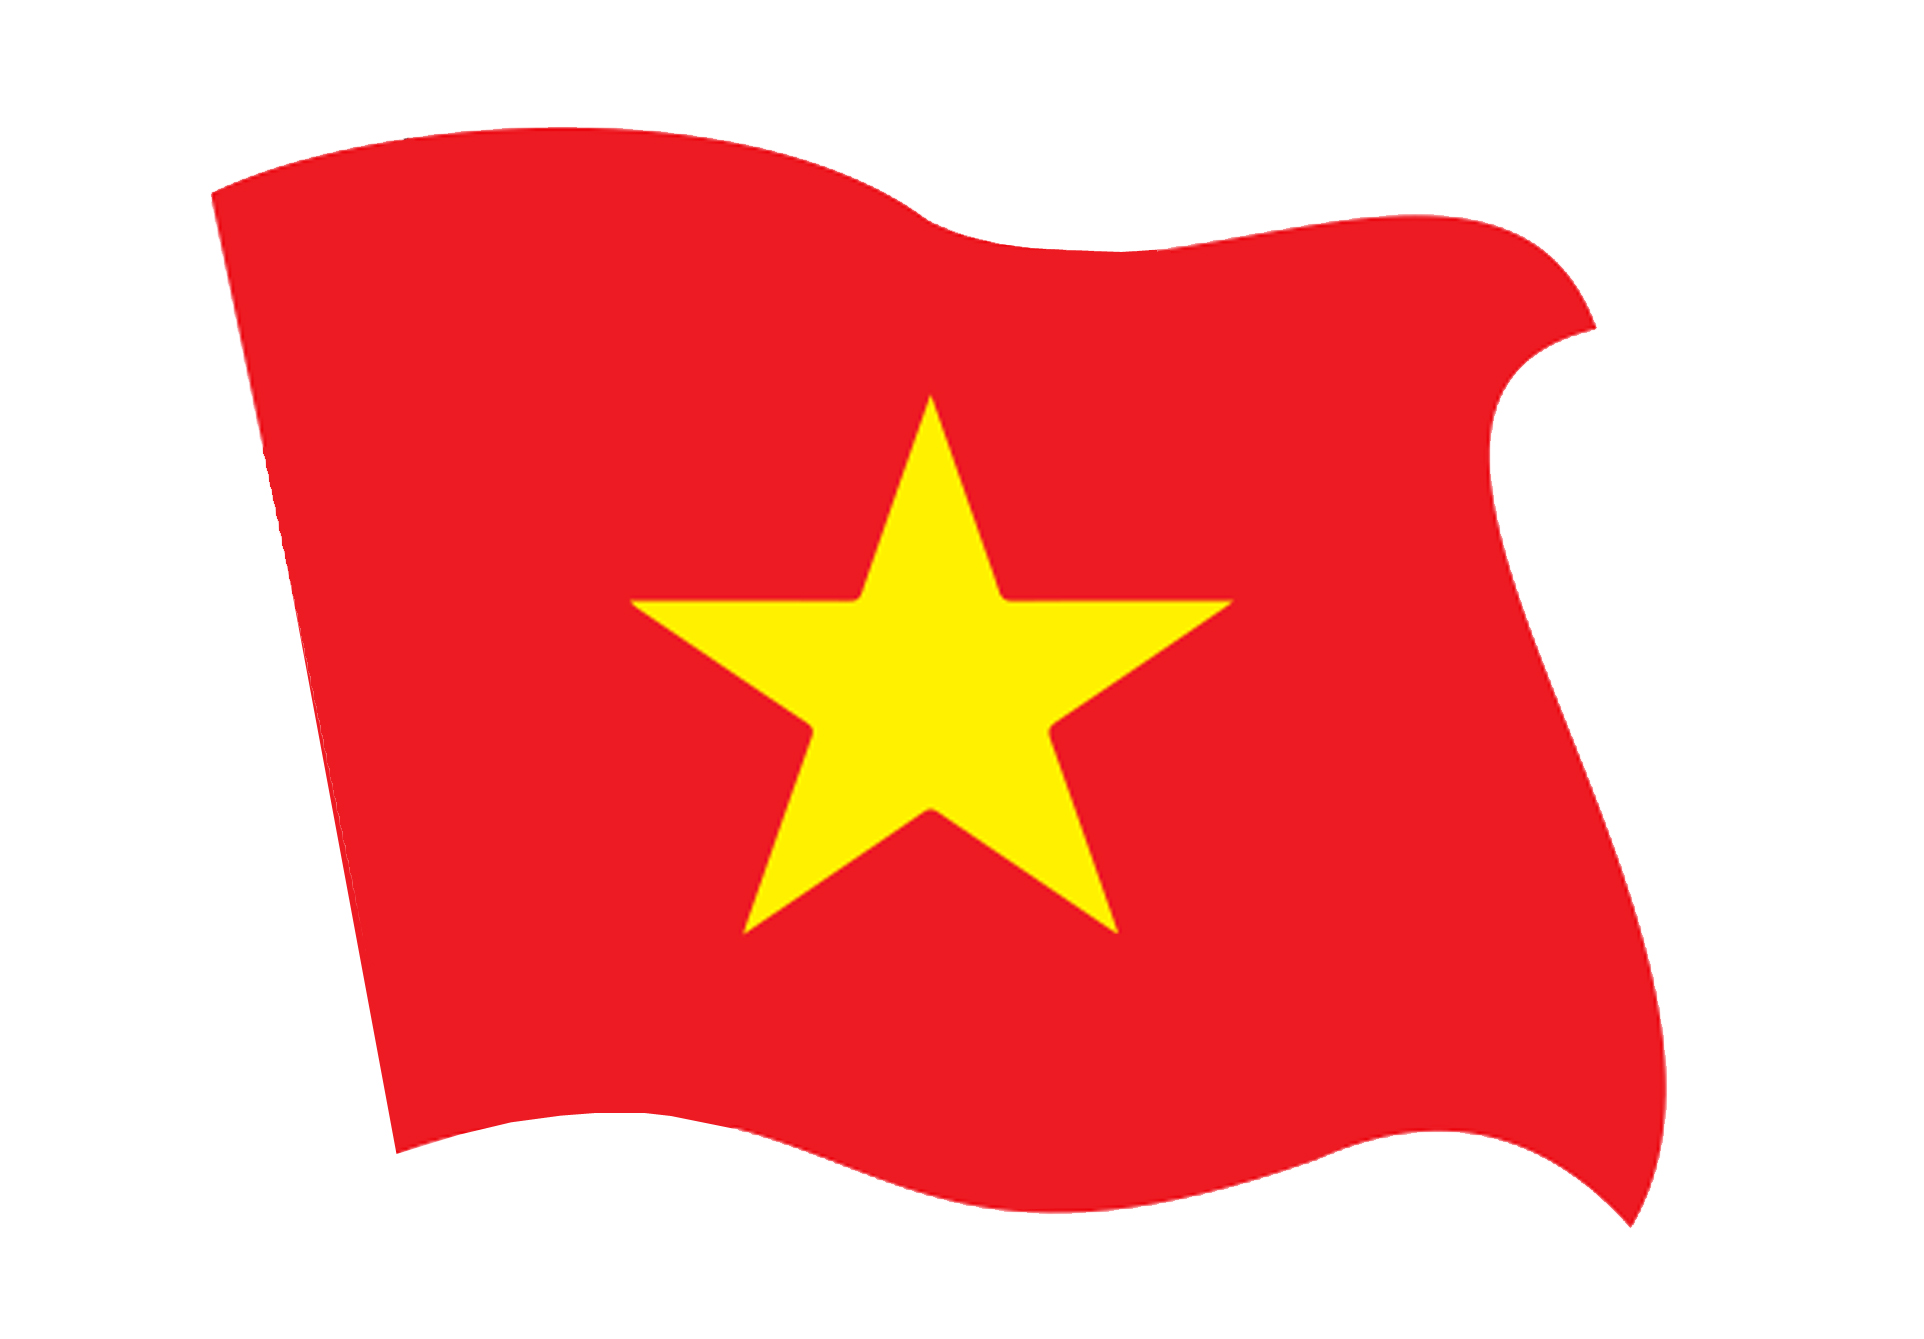 Tem dán lá cờ Việt Nam là cách tuyệt vời để thể hiện tình yêu dành cho quê hương. Với tem dán cờ, bạn có thể trang trí laptop, điện thoại hoặc xe hơi của mình để thể hiện niềm tự hào với lá cờ đỏ sao vàng của tổ quốc. Hãy xem hình ảnh liên quan để tìm nguồn cảm hứng cho sự sáng tạo của bạn!